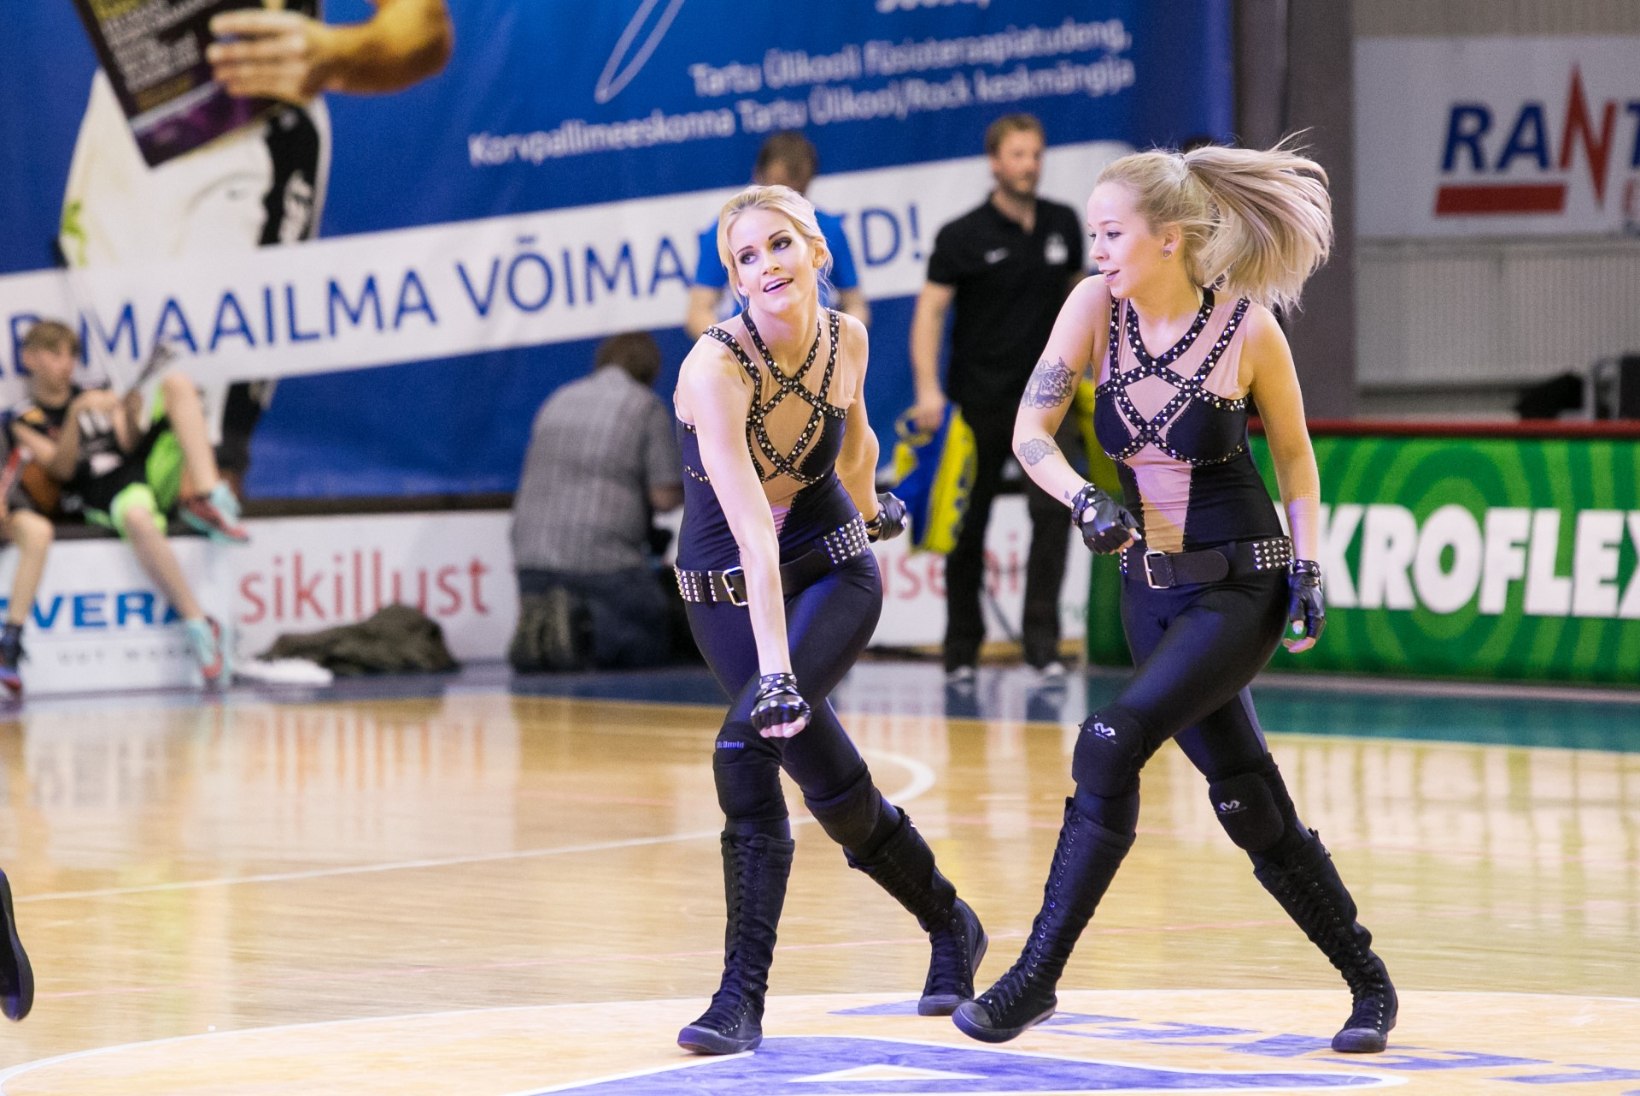 GALERII | Sulnid fotod Tartu Rocki finaalis võidule aidanud tantsutüdrukutest